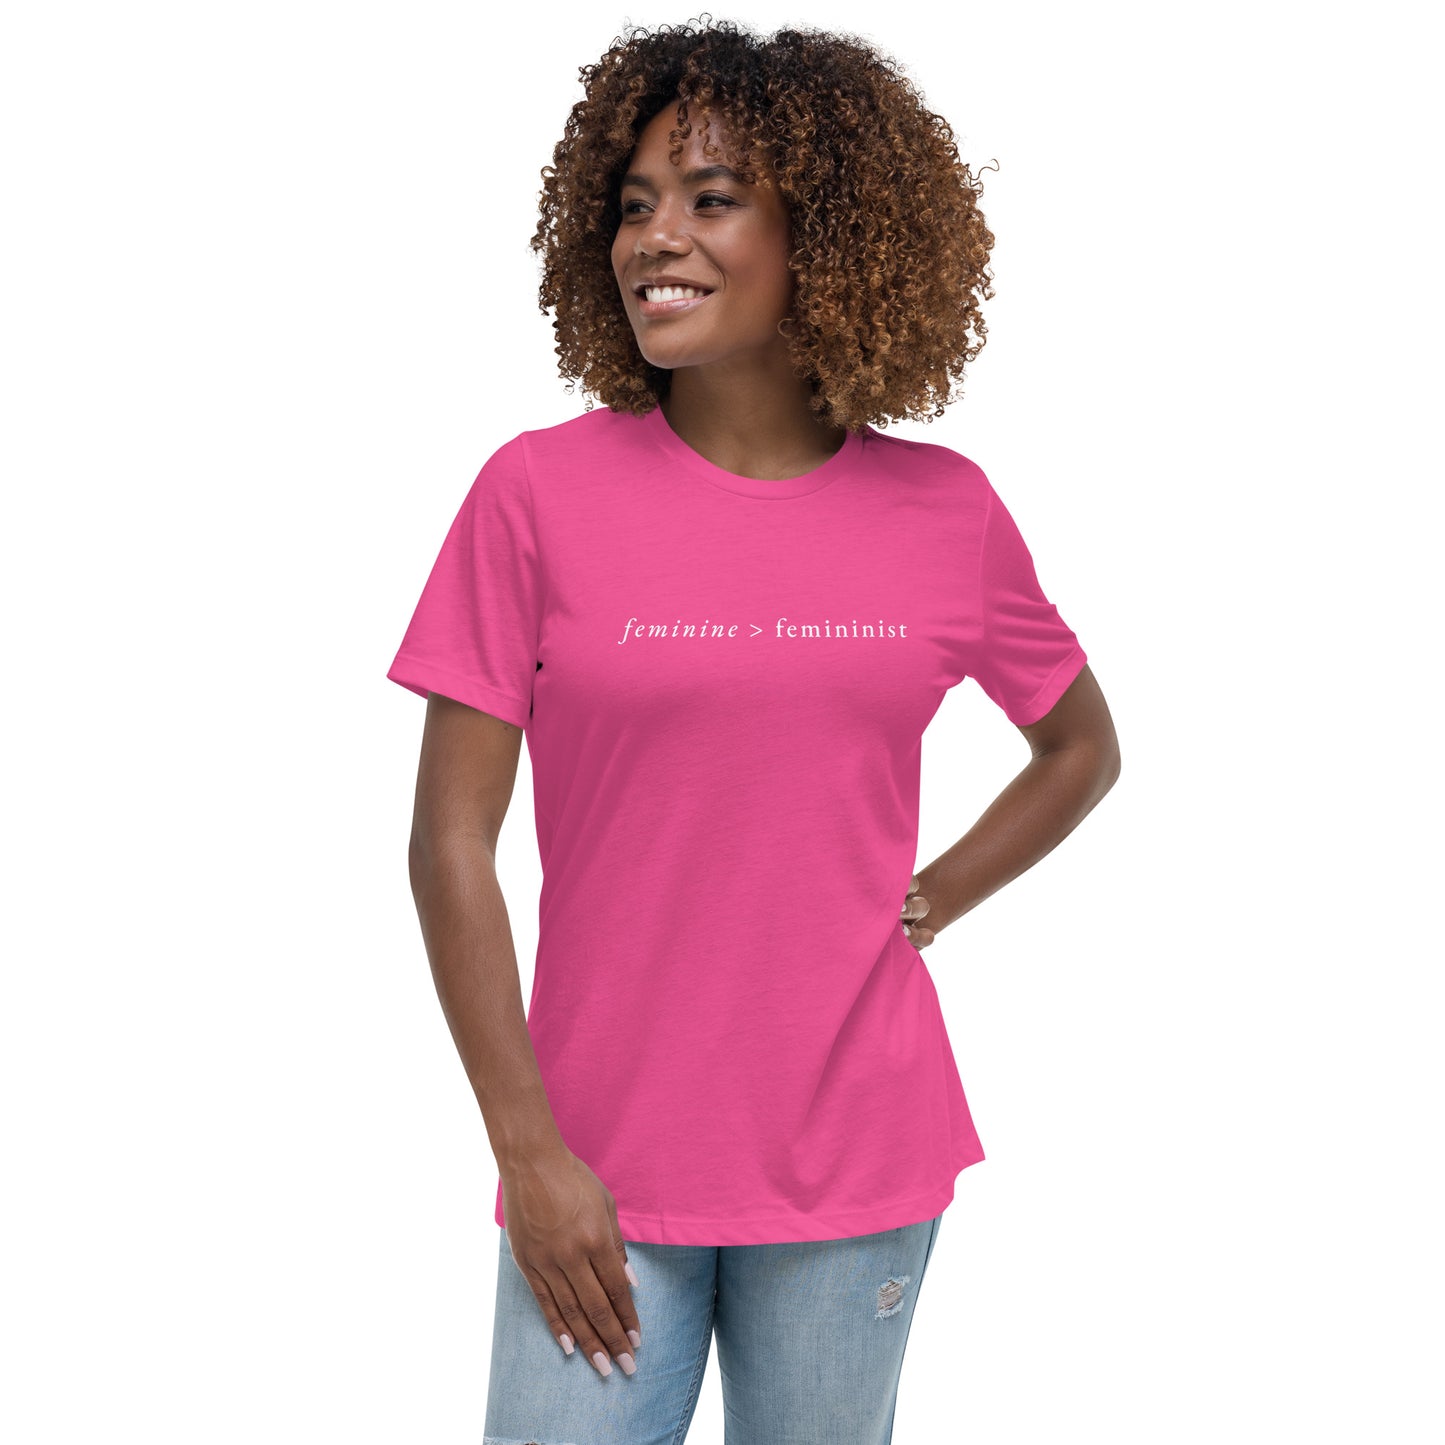 Feminine > Feminist T-Shirt